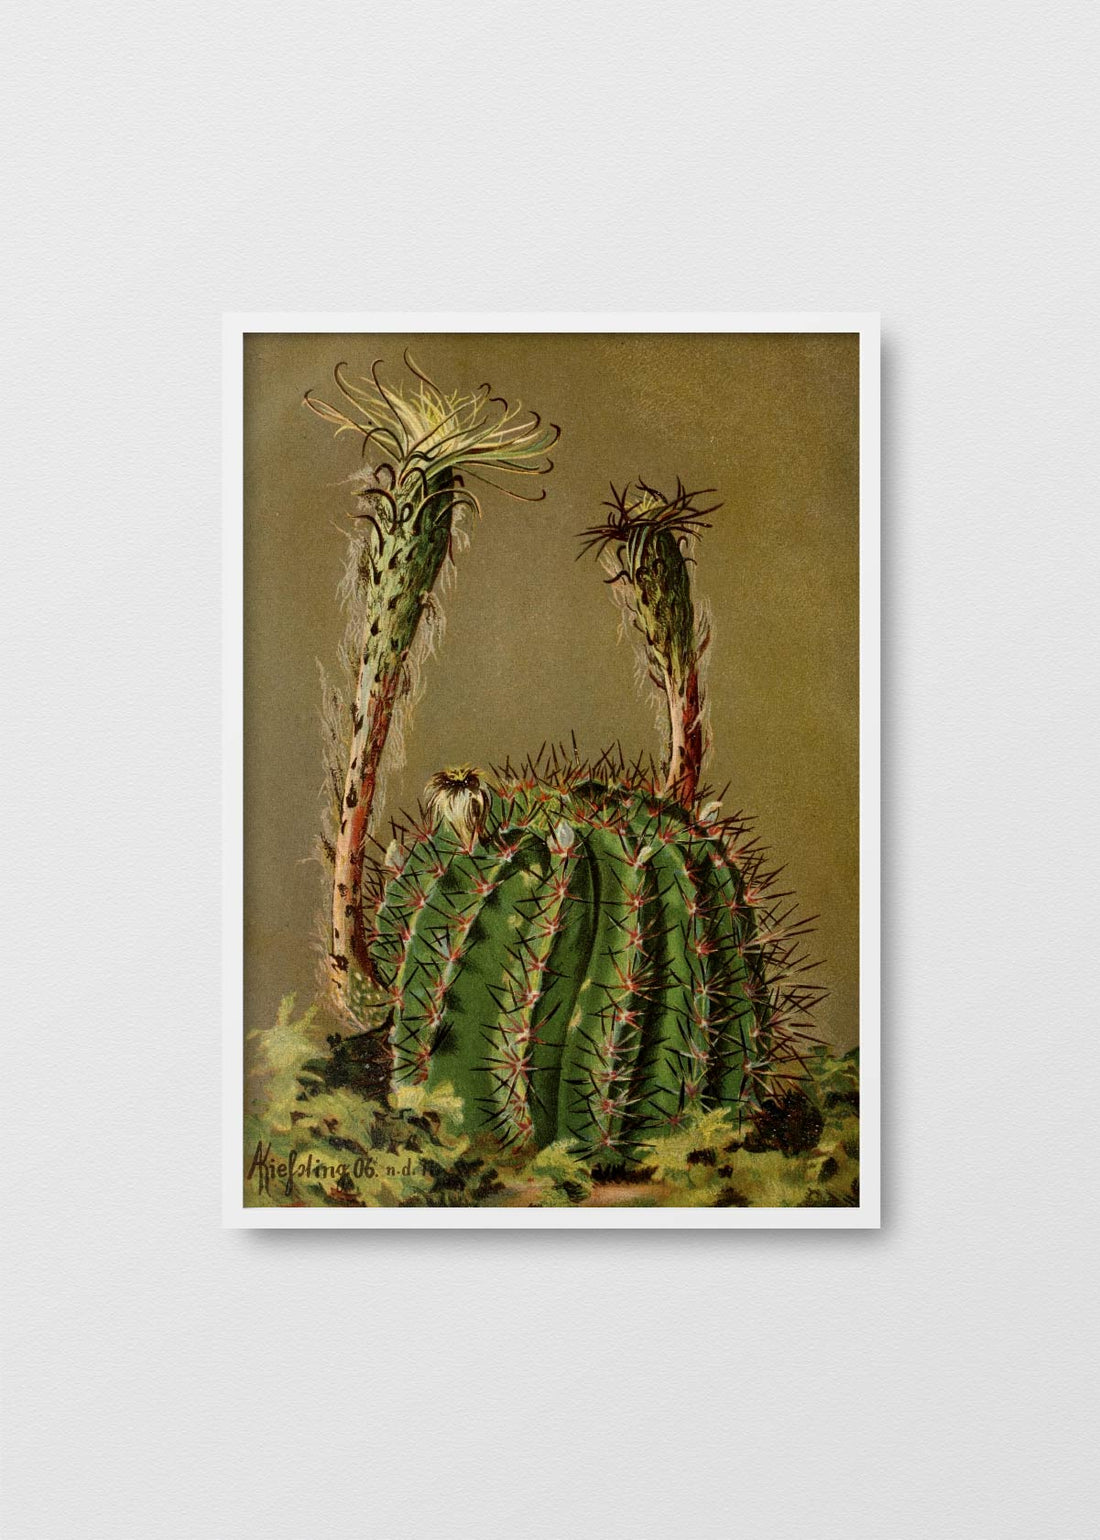 Cactus San pedro - Testimoniaprints